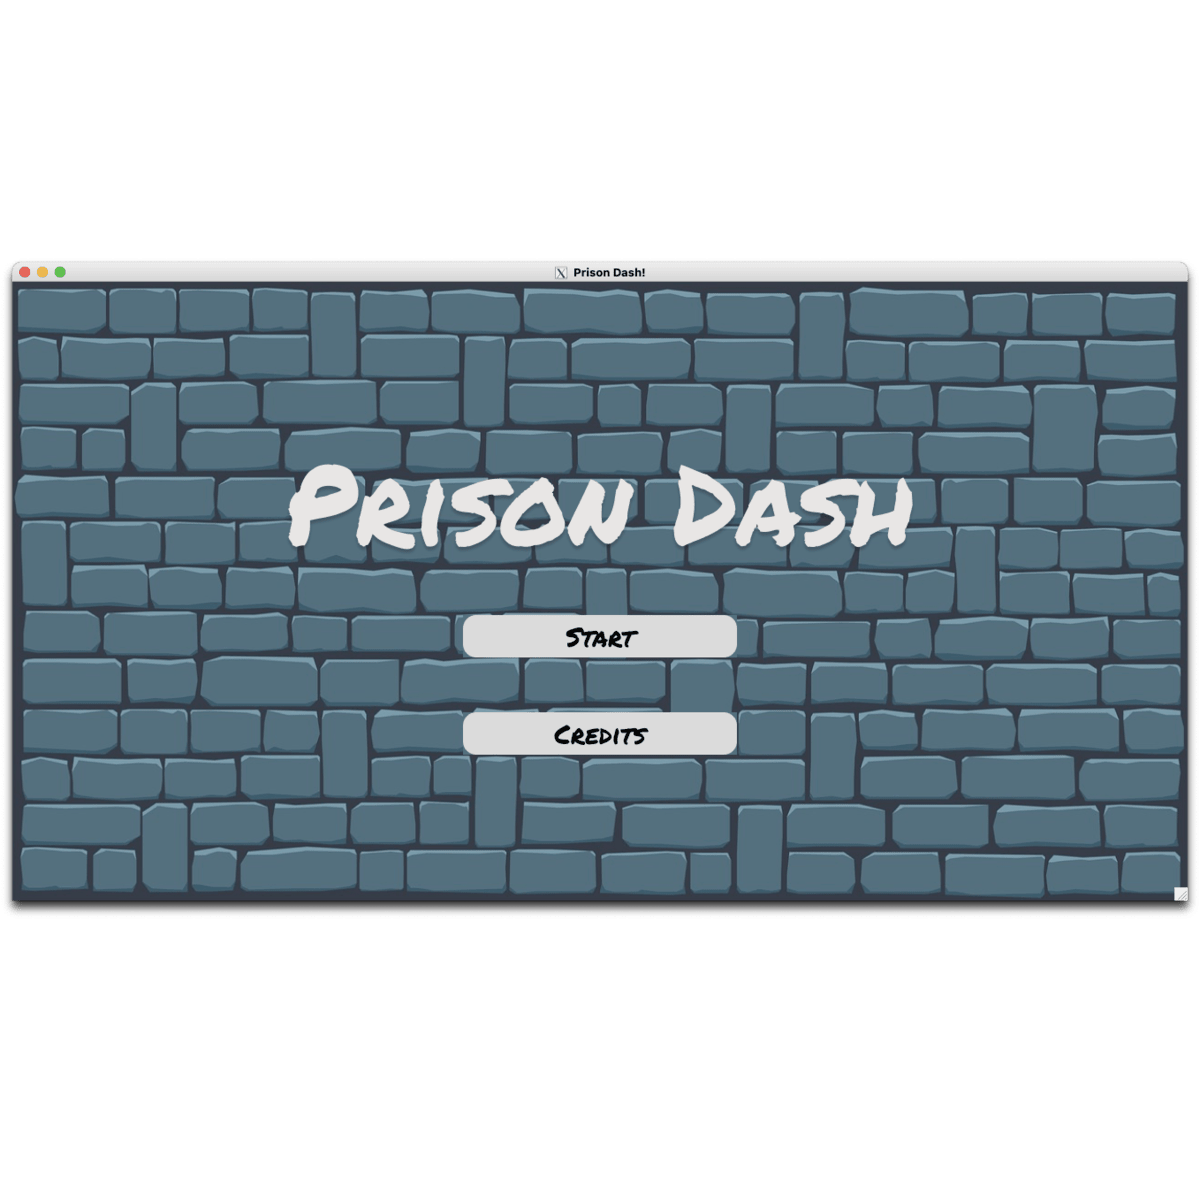 Prison-Dash